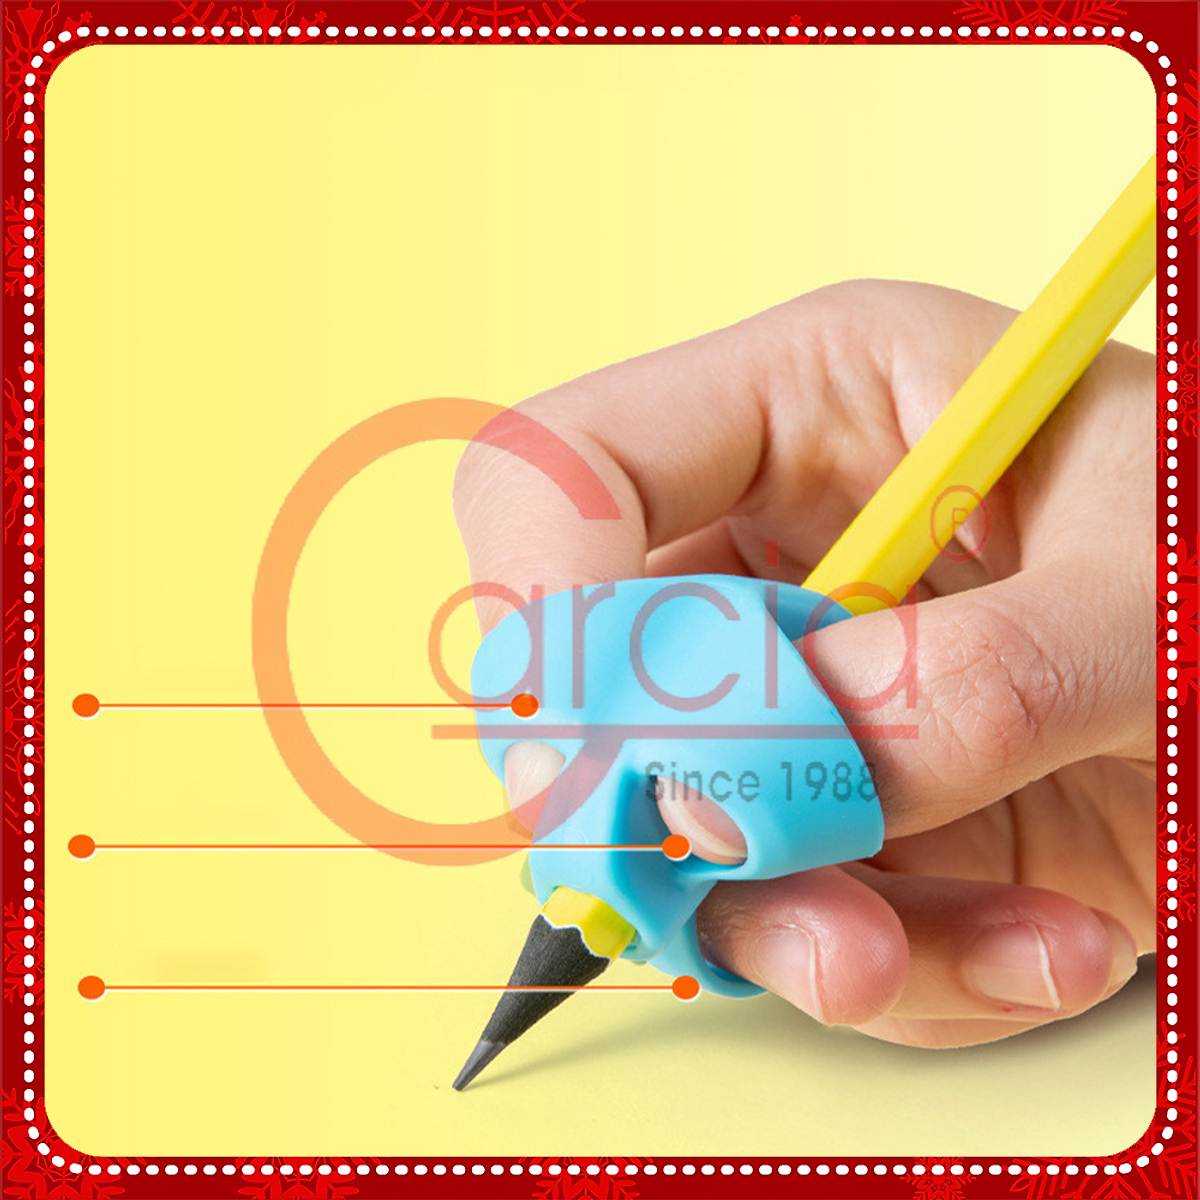 Dụng cụ hỗ trợ cầm nắm bút cho học sinh - Bộ 4 chiếc tương ứng 4 giai đoạn hỗ trợ bé cầm nắm bút đúng tư thế - Hàng chính hàng